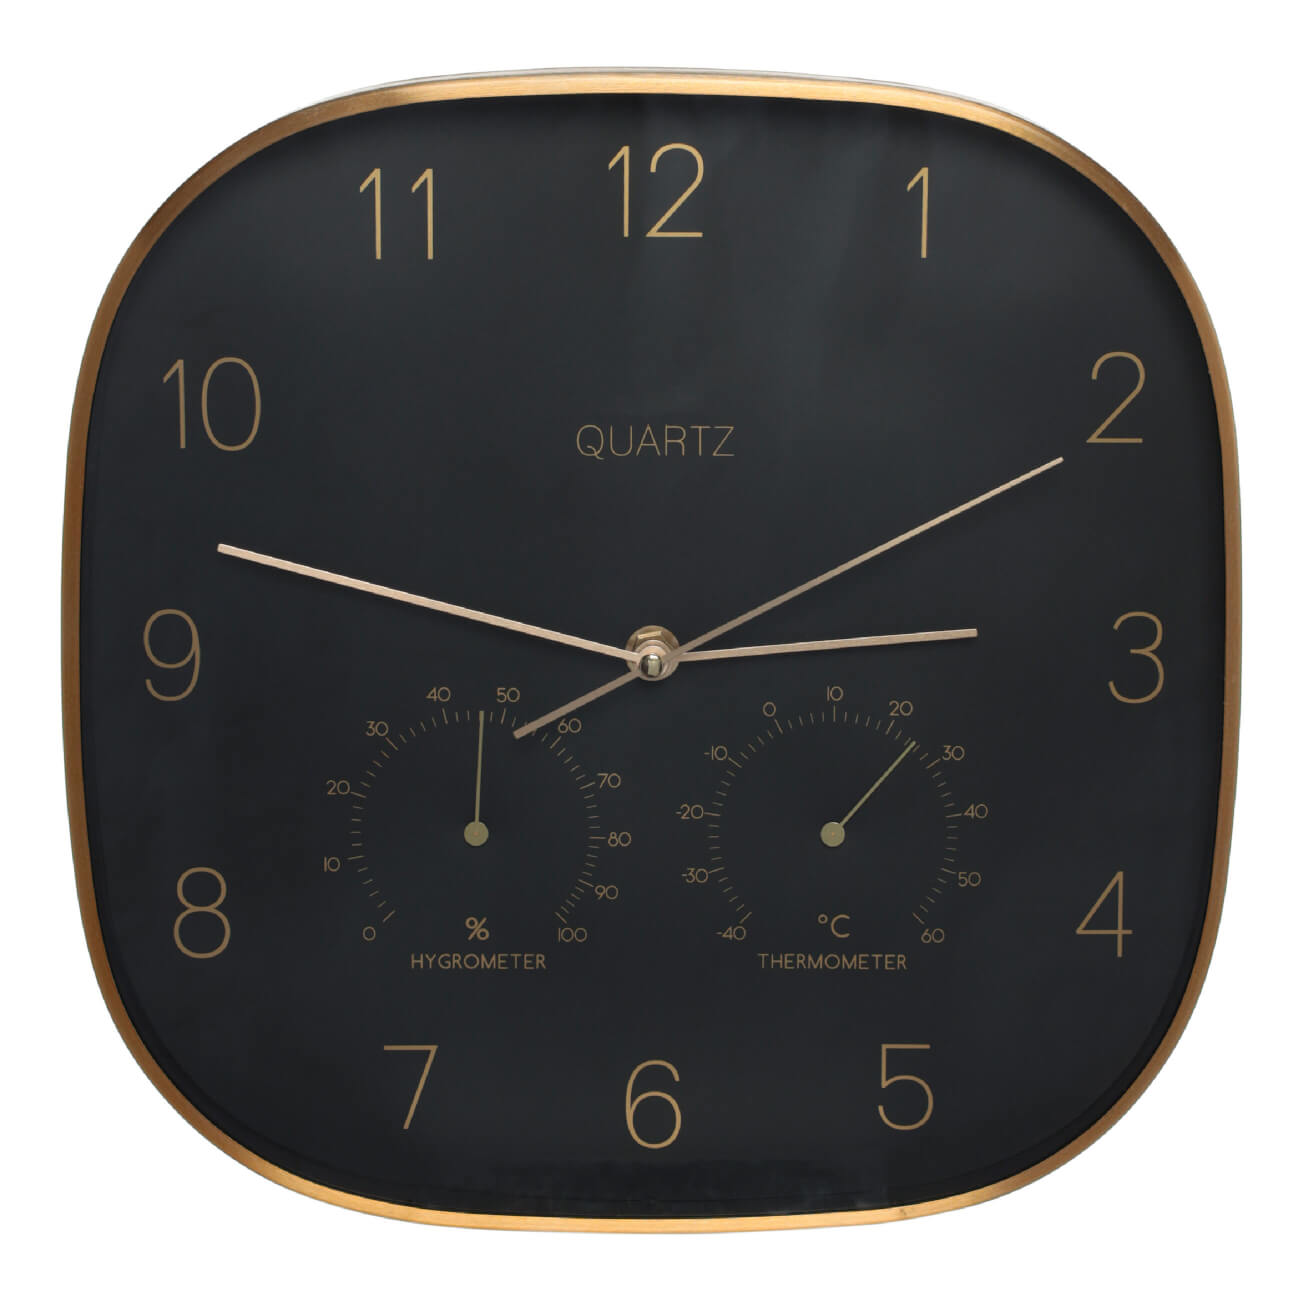 Часы настенные, 30 см, с термометром и гигрометром, металл/стекло, черные, Dial часы наручные мужские черные